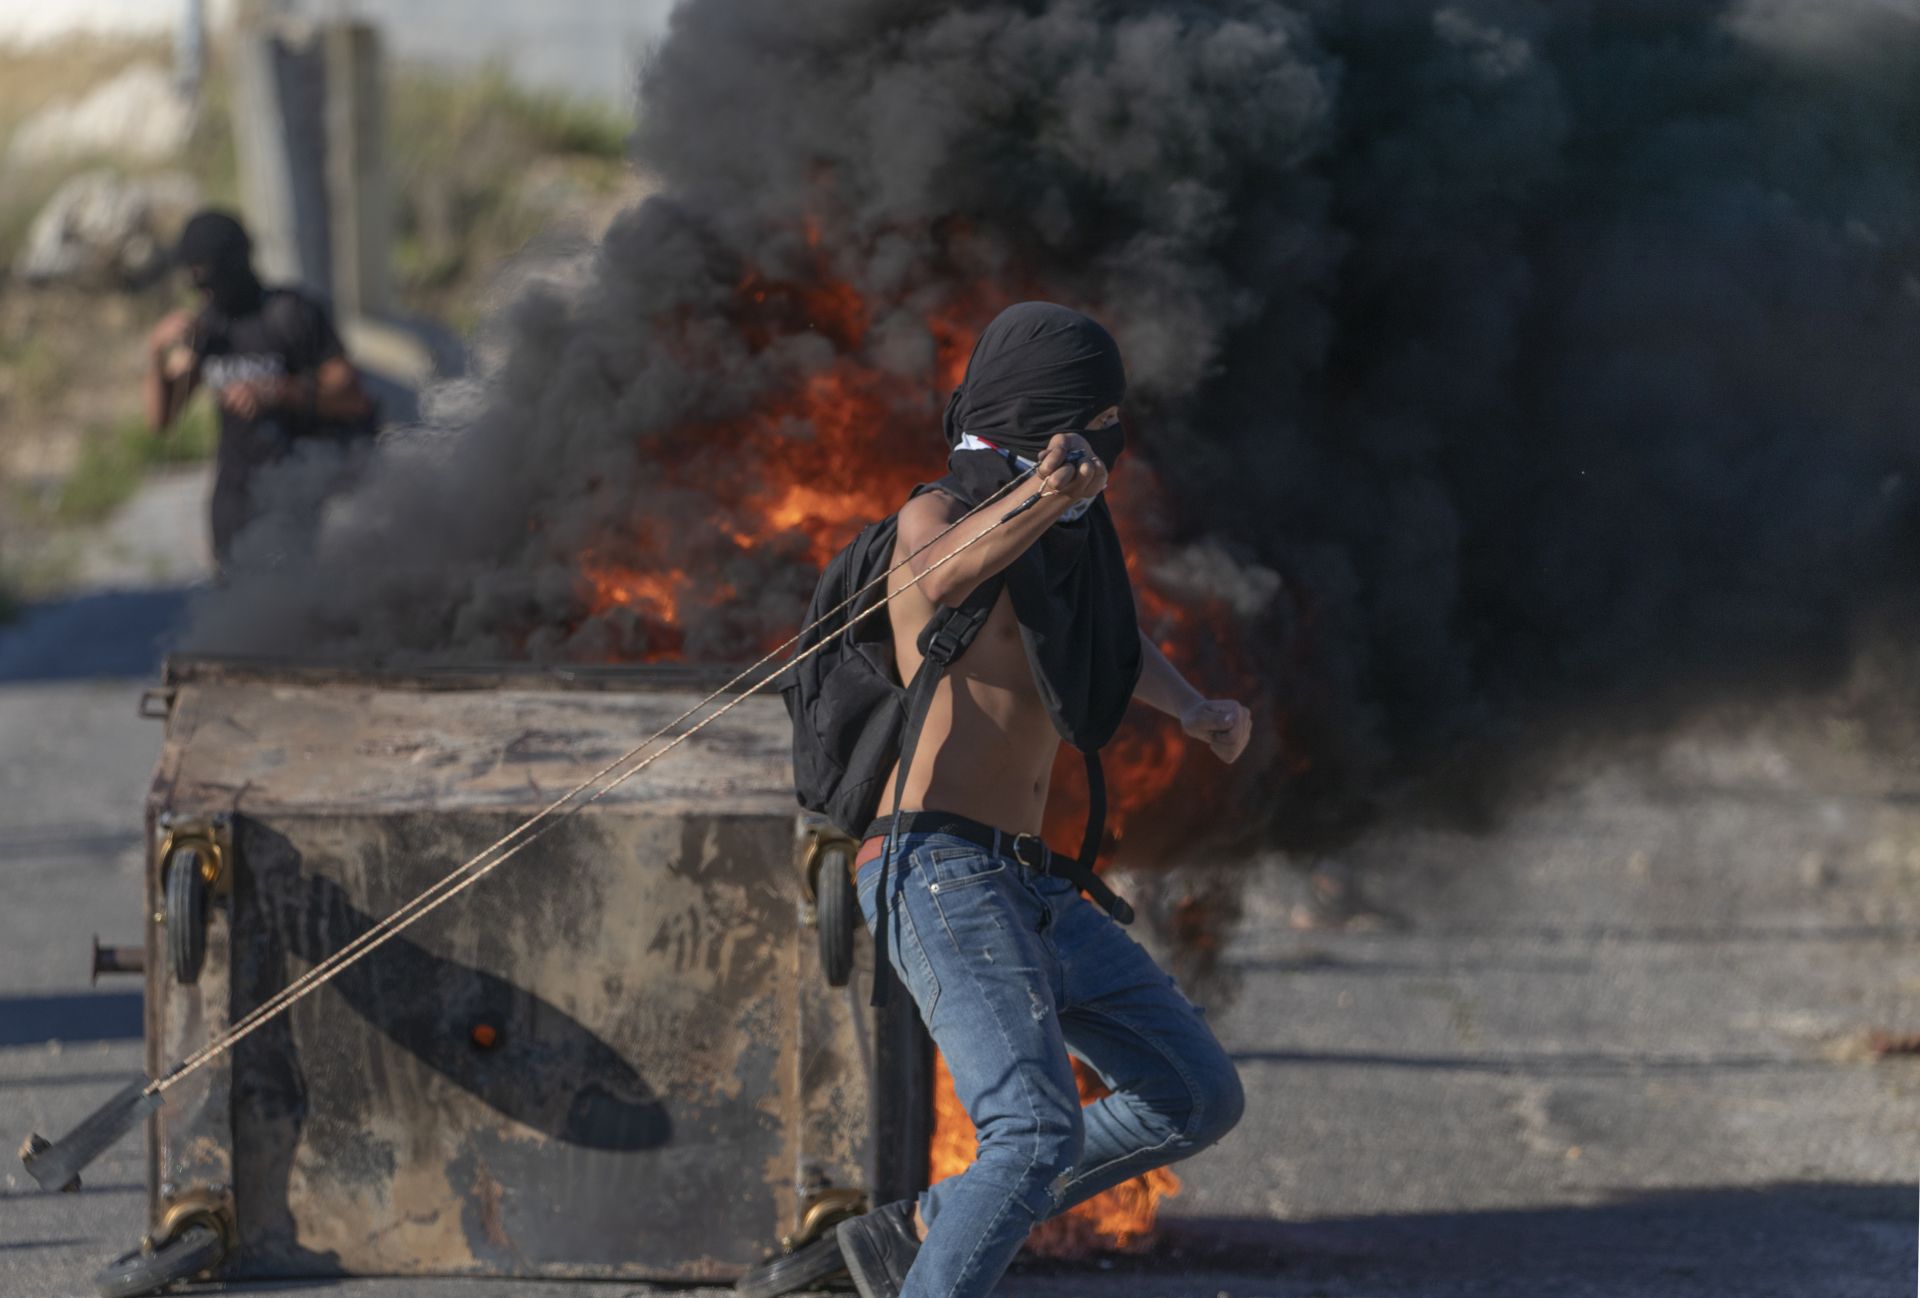 Палестински протестиращи горят гуми и използват подръчни средства за бой при сблъсъци с израелски войници на входа на еврейското селище Бейт Ел, близо до град Рамала на Западния бряг, 15 юни 2021